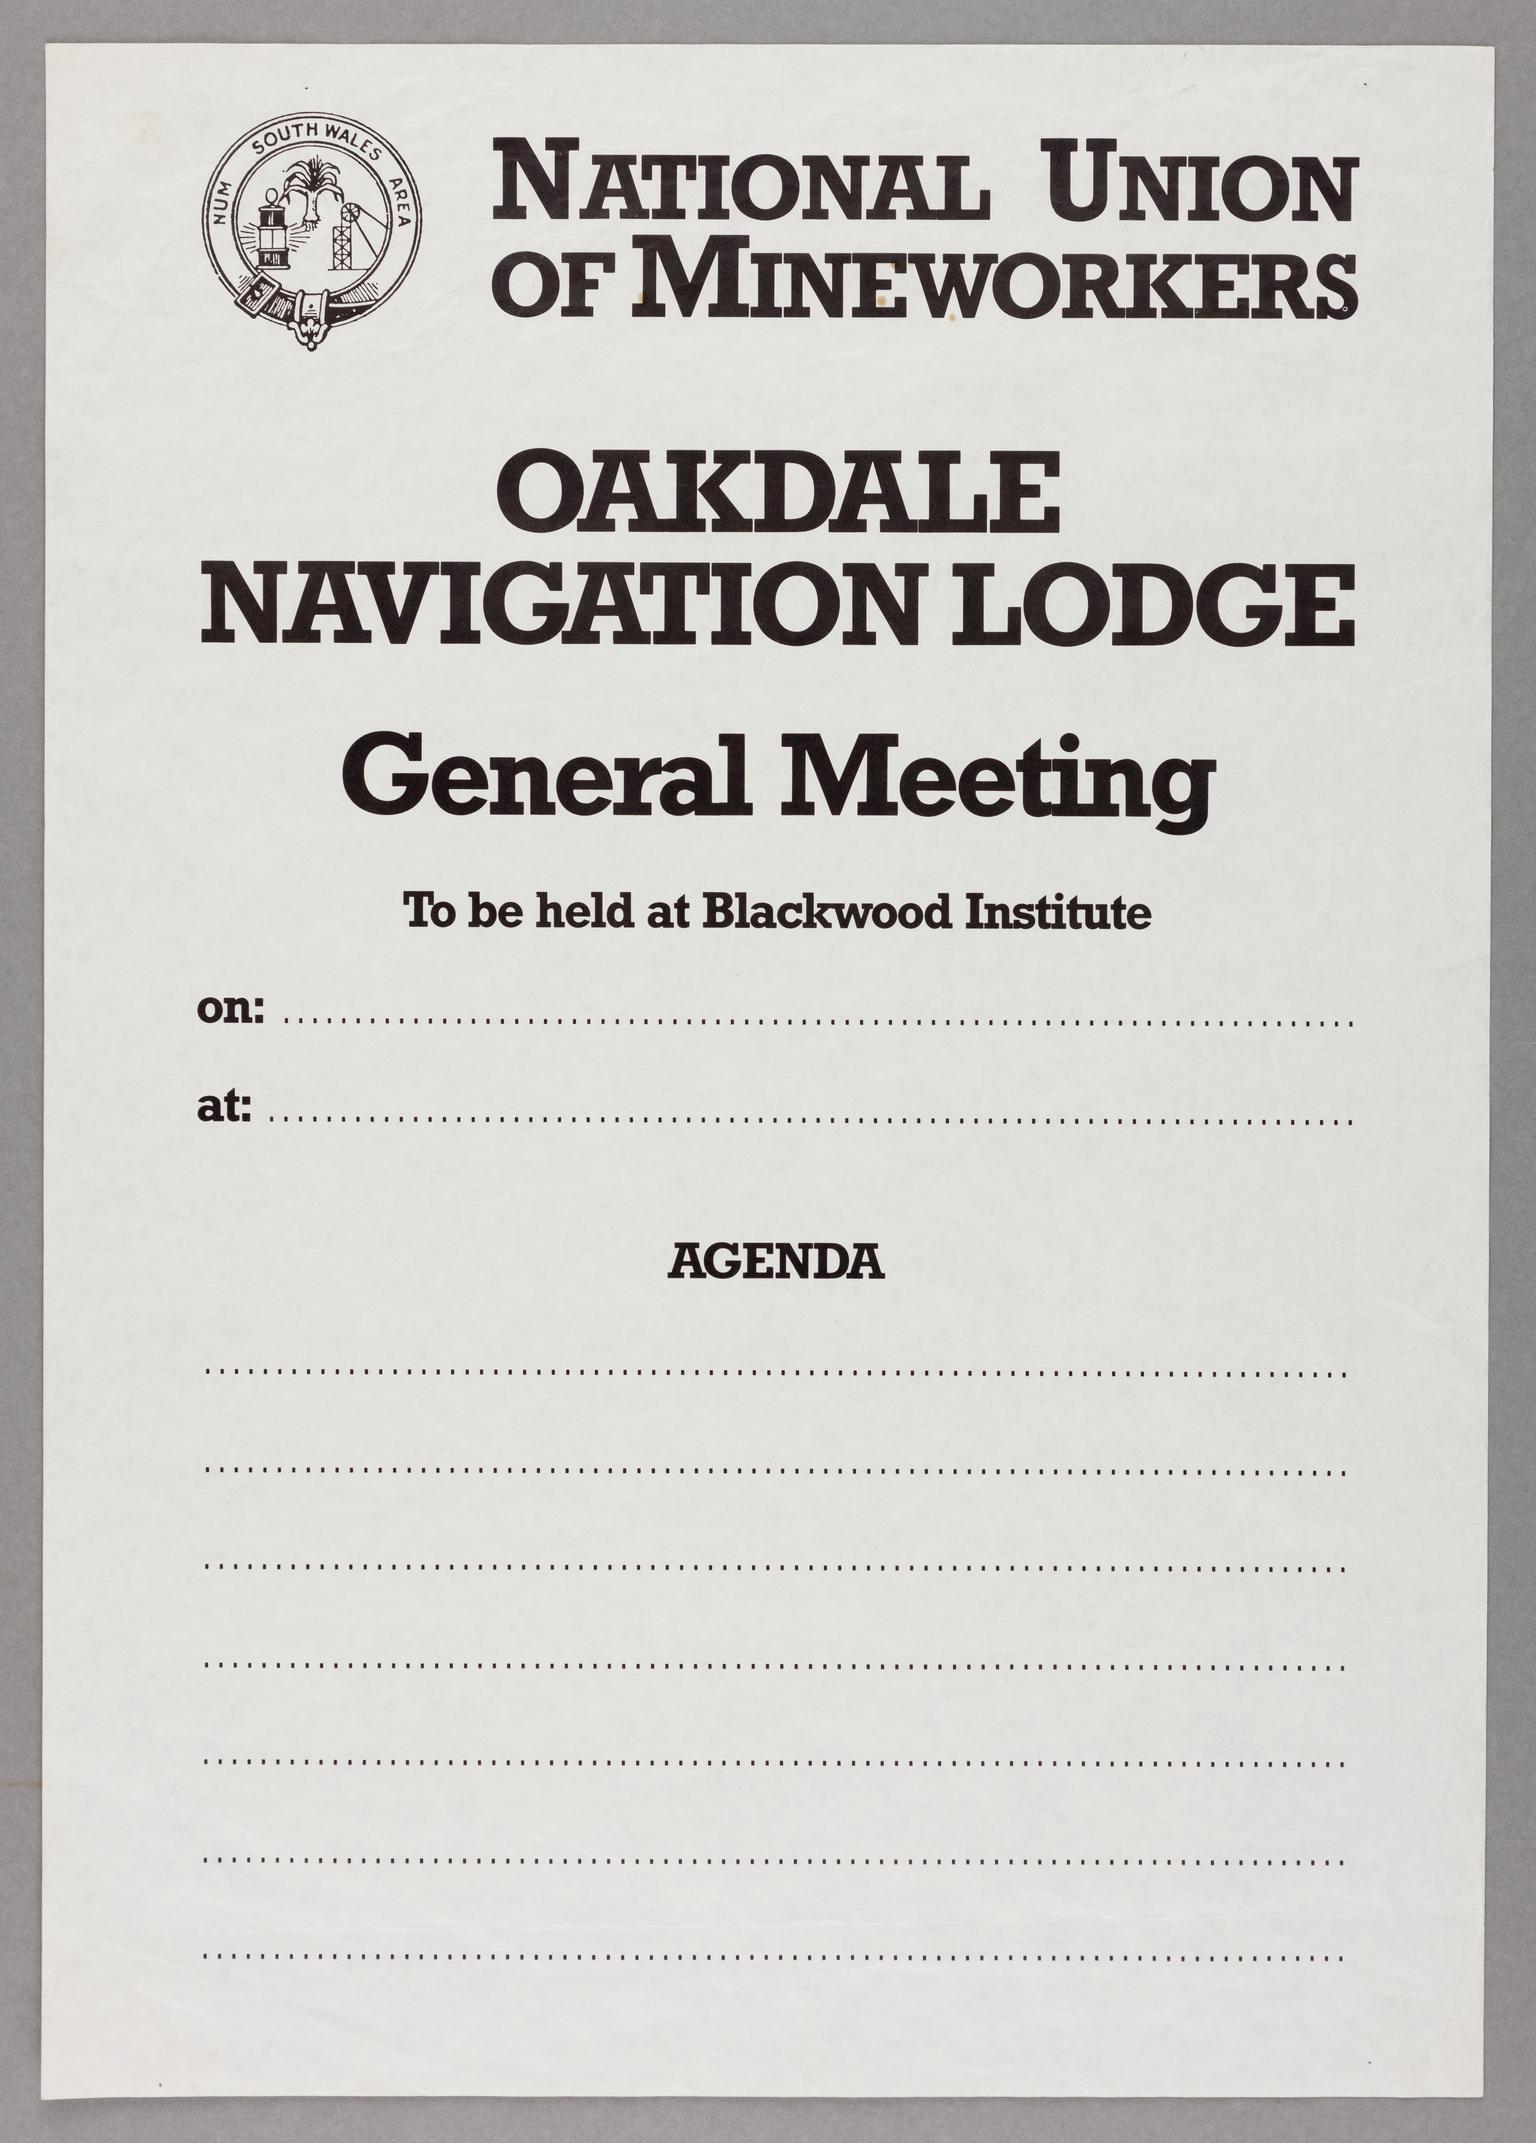 N.U.M. Oakdale Navigation Lodge, poster